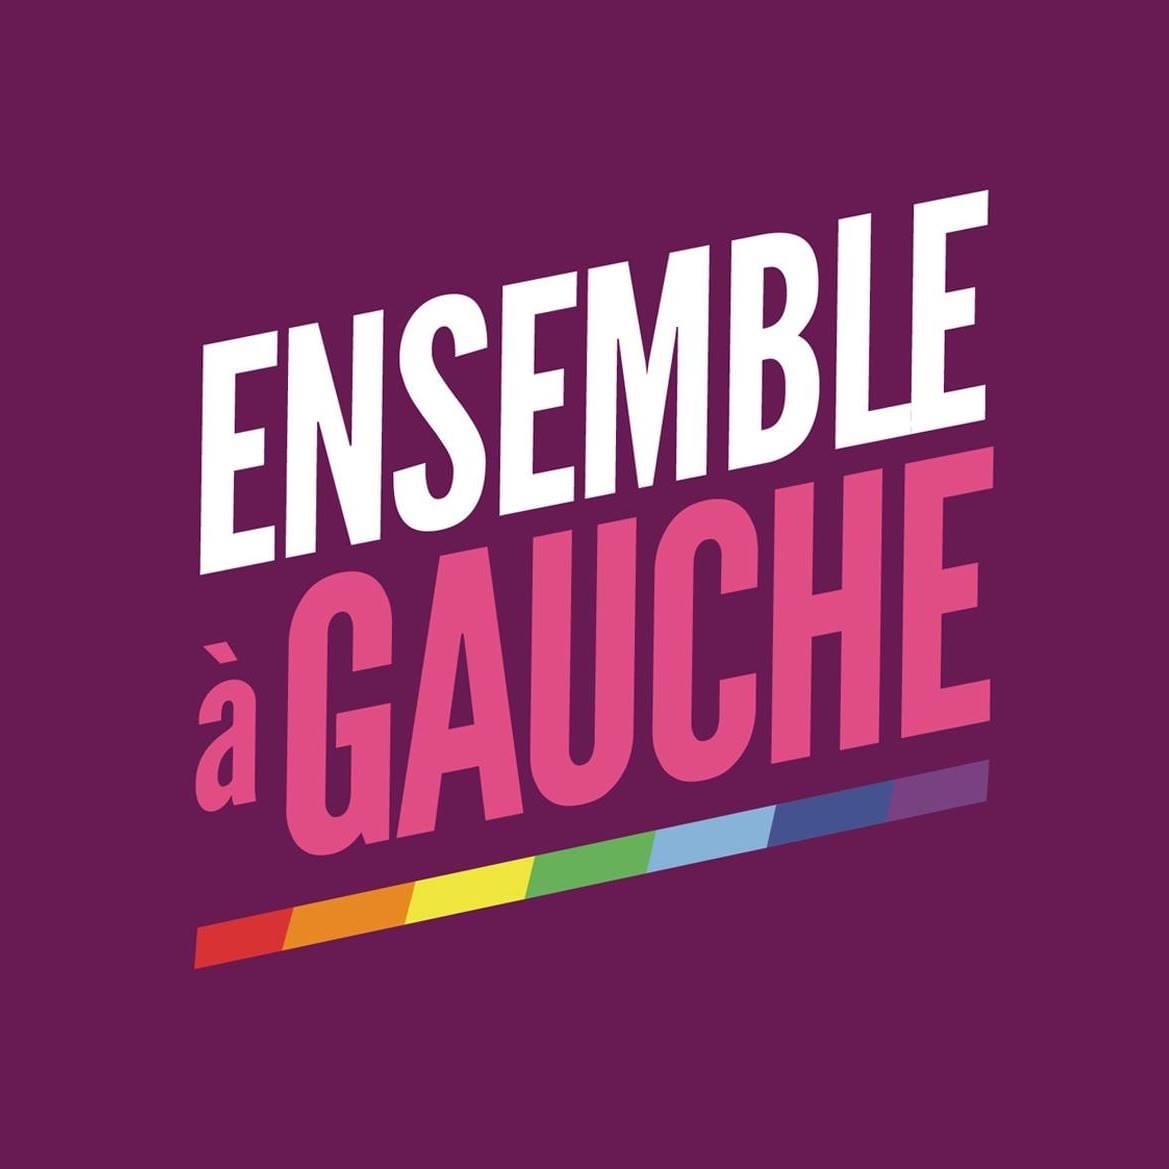 Ensemble a Gauche, France